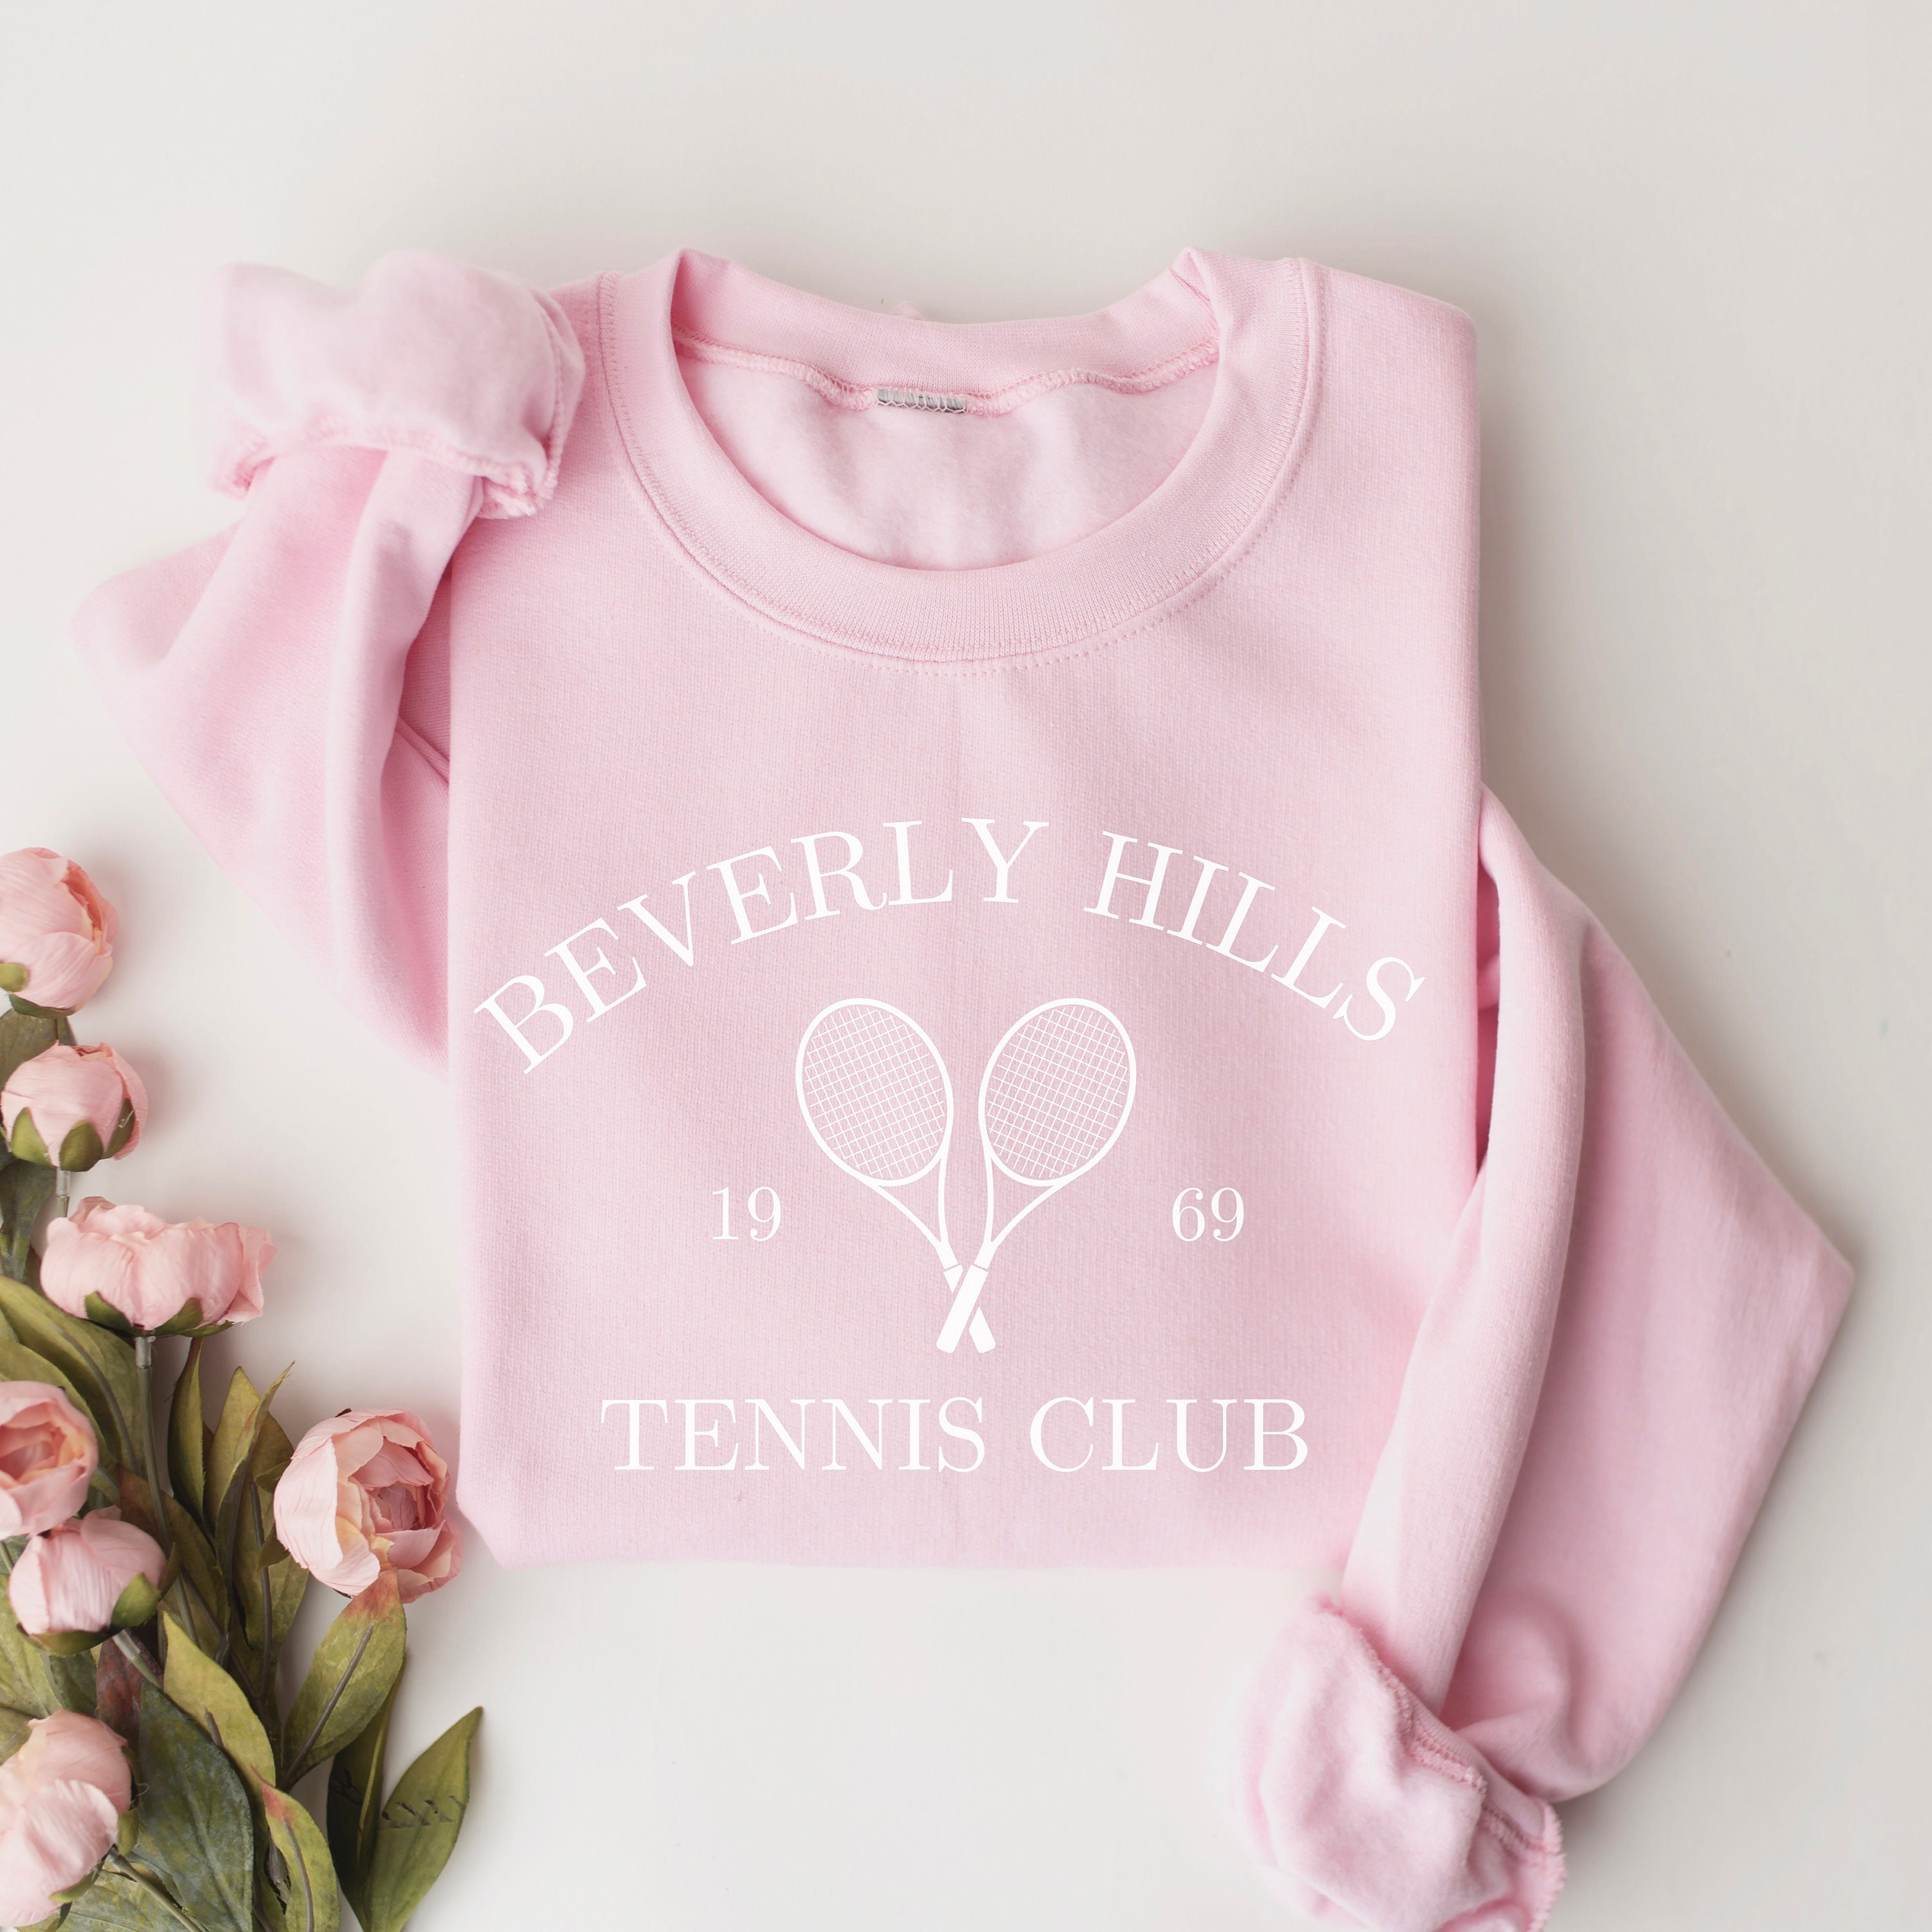 Beverly Hills Sweatshirt, Women's Trendy Sweatshirt, Women's